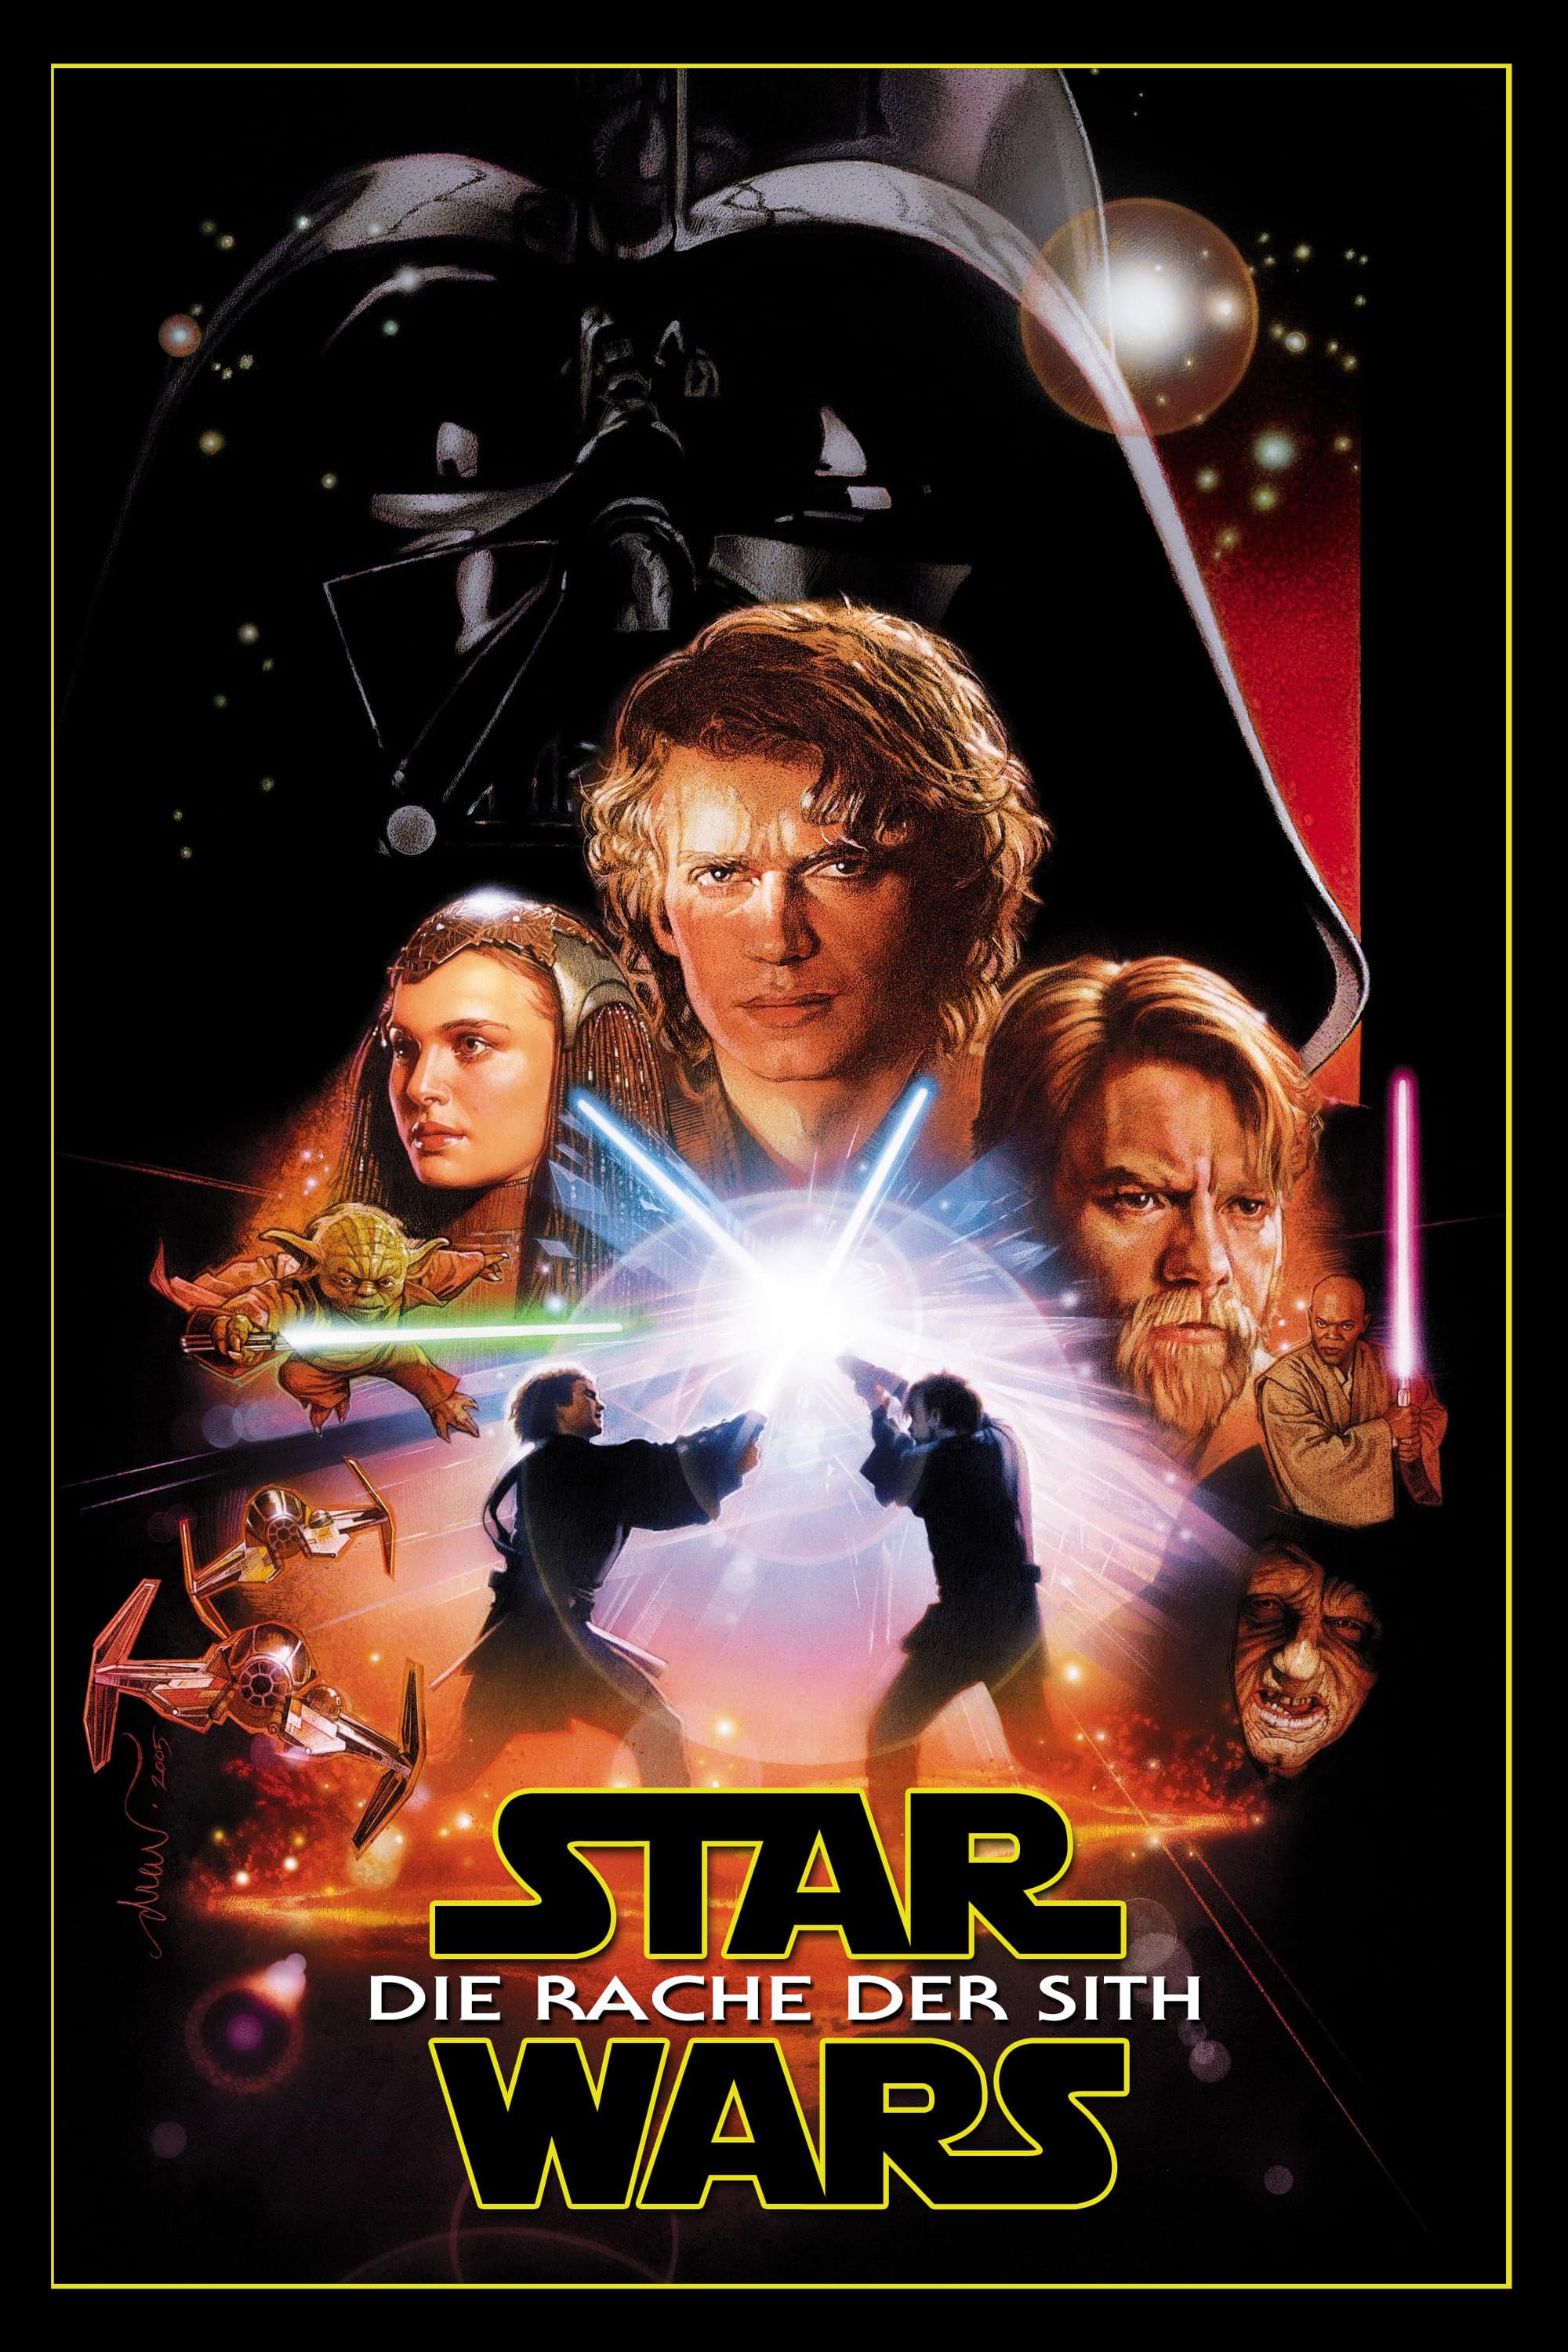 Star Wars: Episode III - Die Rache der Sith poster